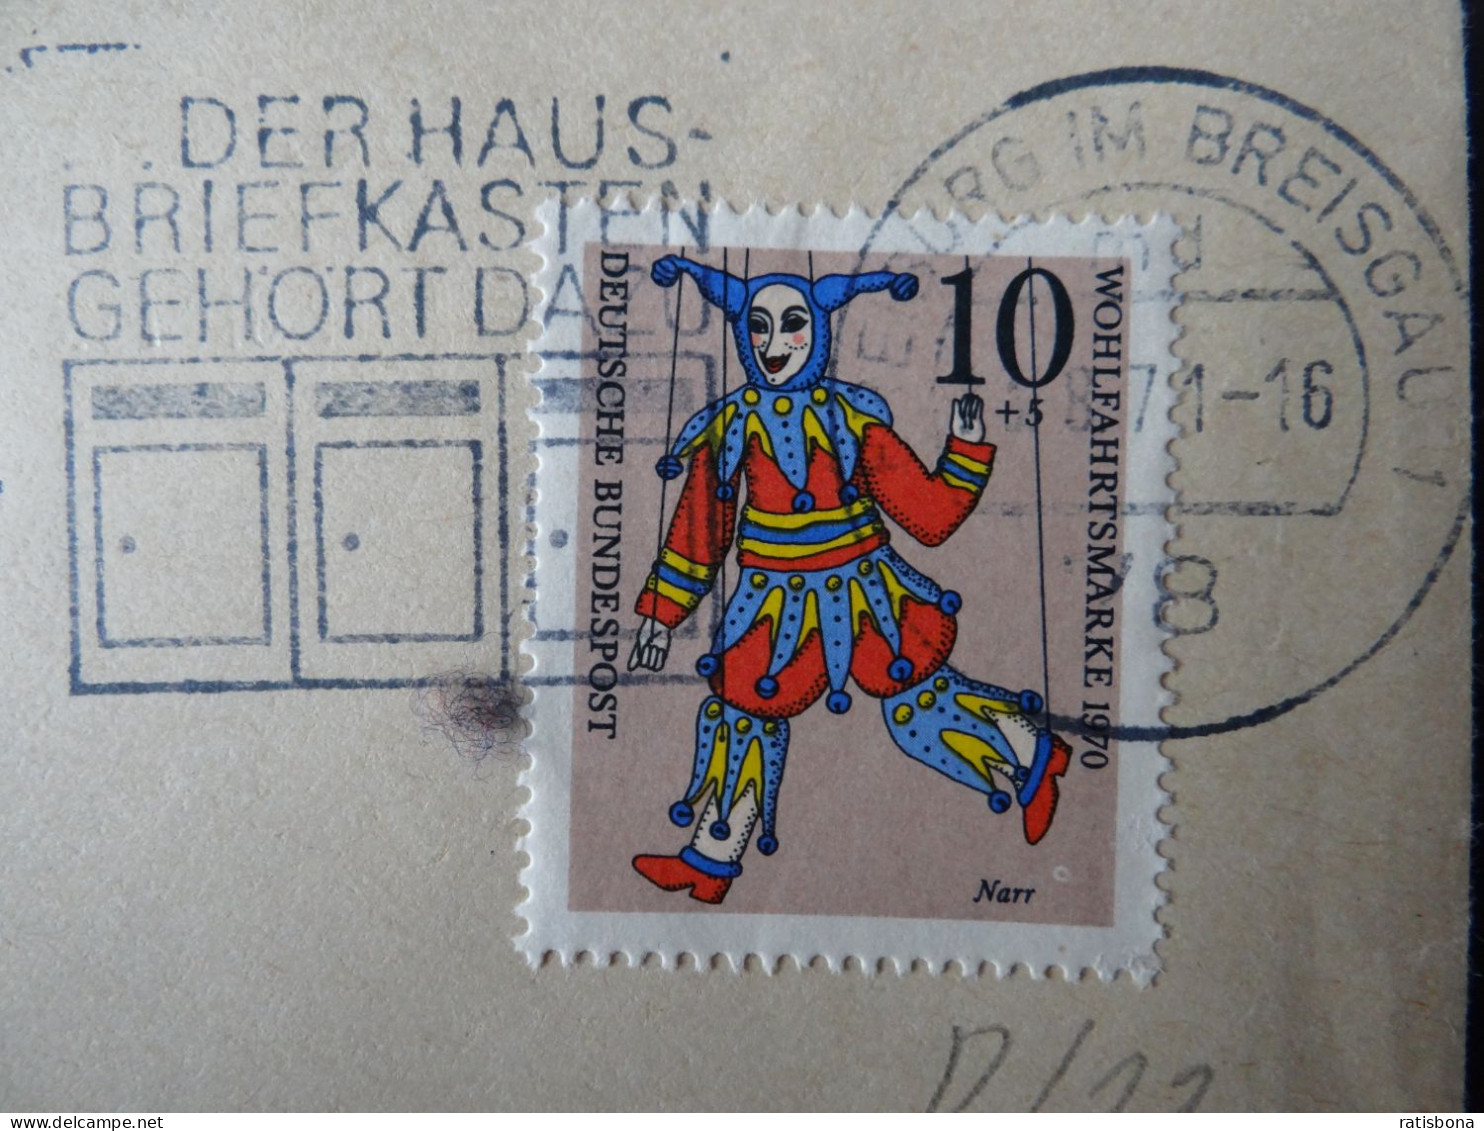 7800 Freiburg I.Breisgau - Der Hausbriefkasten Gehört Dazu - Werbestempel 1971 - Franking Machines (EMA)